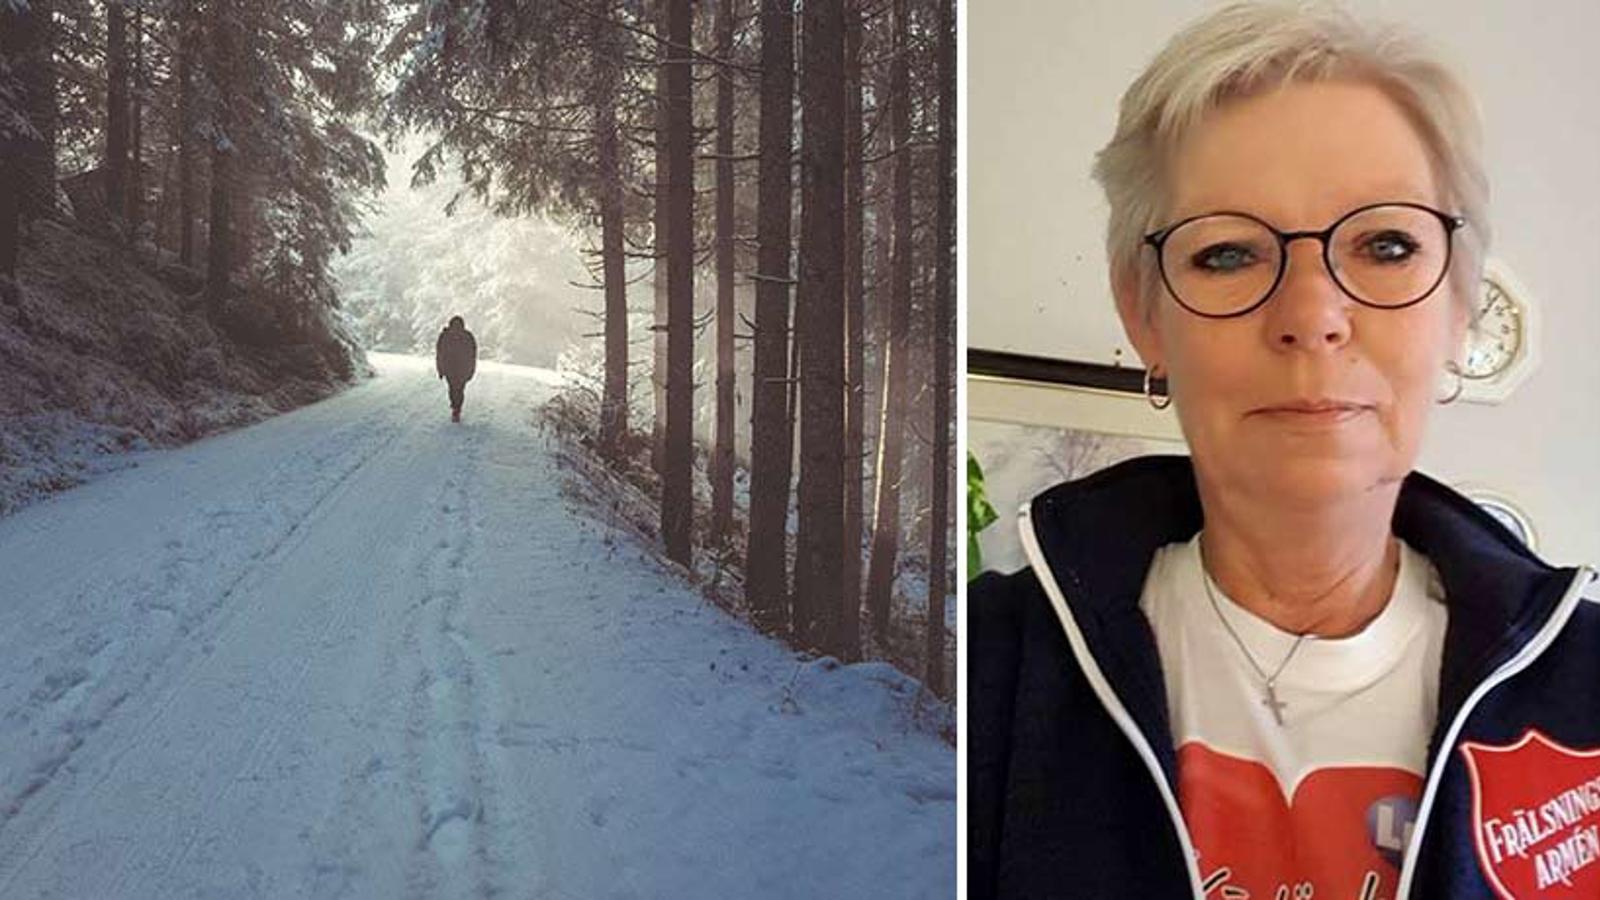 Till vänster: Ryggtavlan på en person som är ute och går på en snötäckt stig i skogen. Till höger: Porträttbild av Ihlona Sjödin.